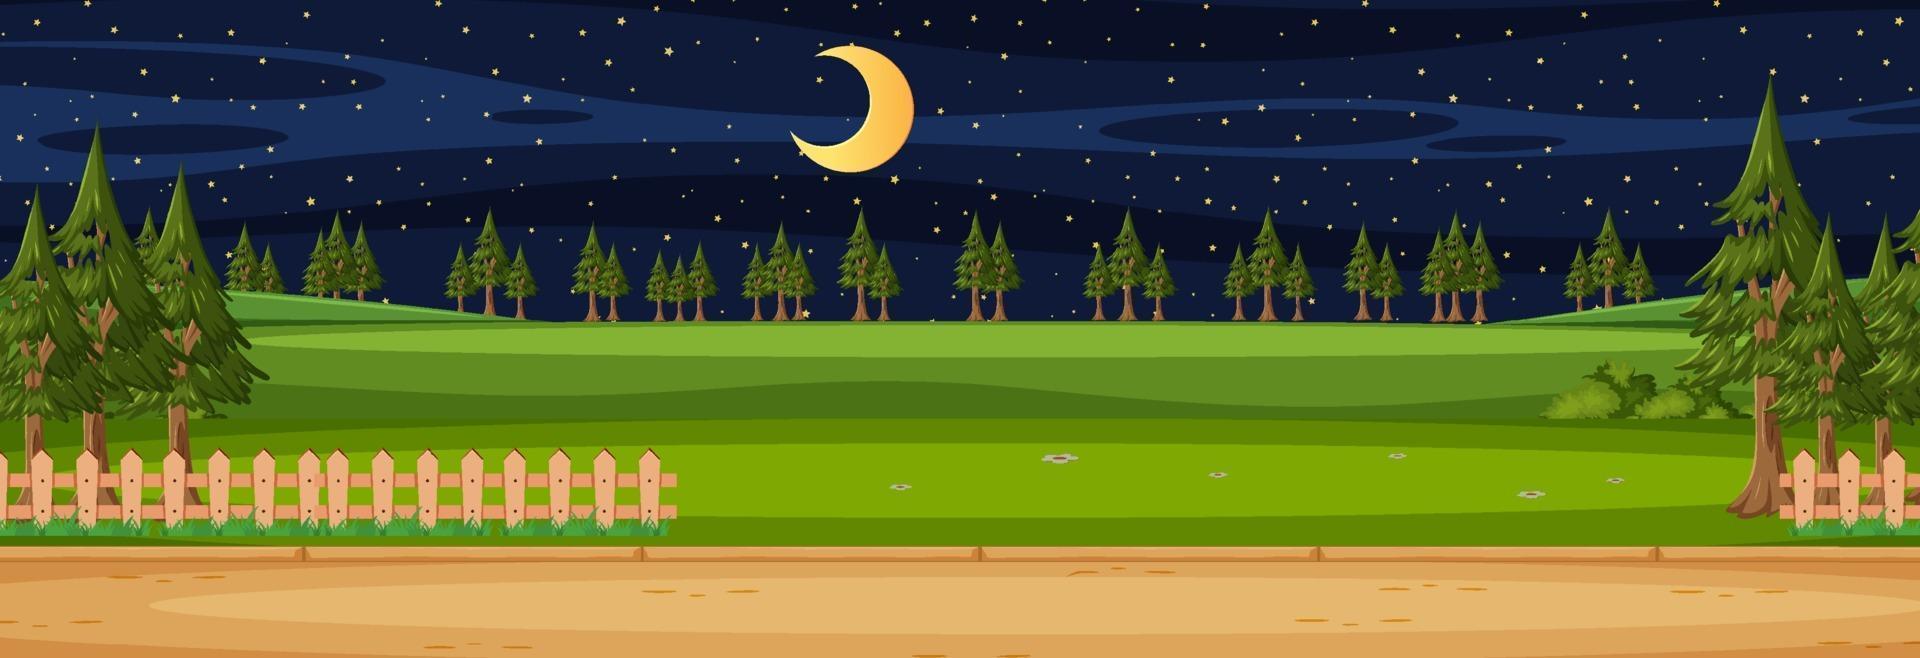 Escena horizontal de paisaje en blanco por la noche con muchos pinos vector